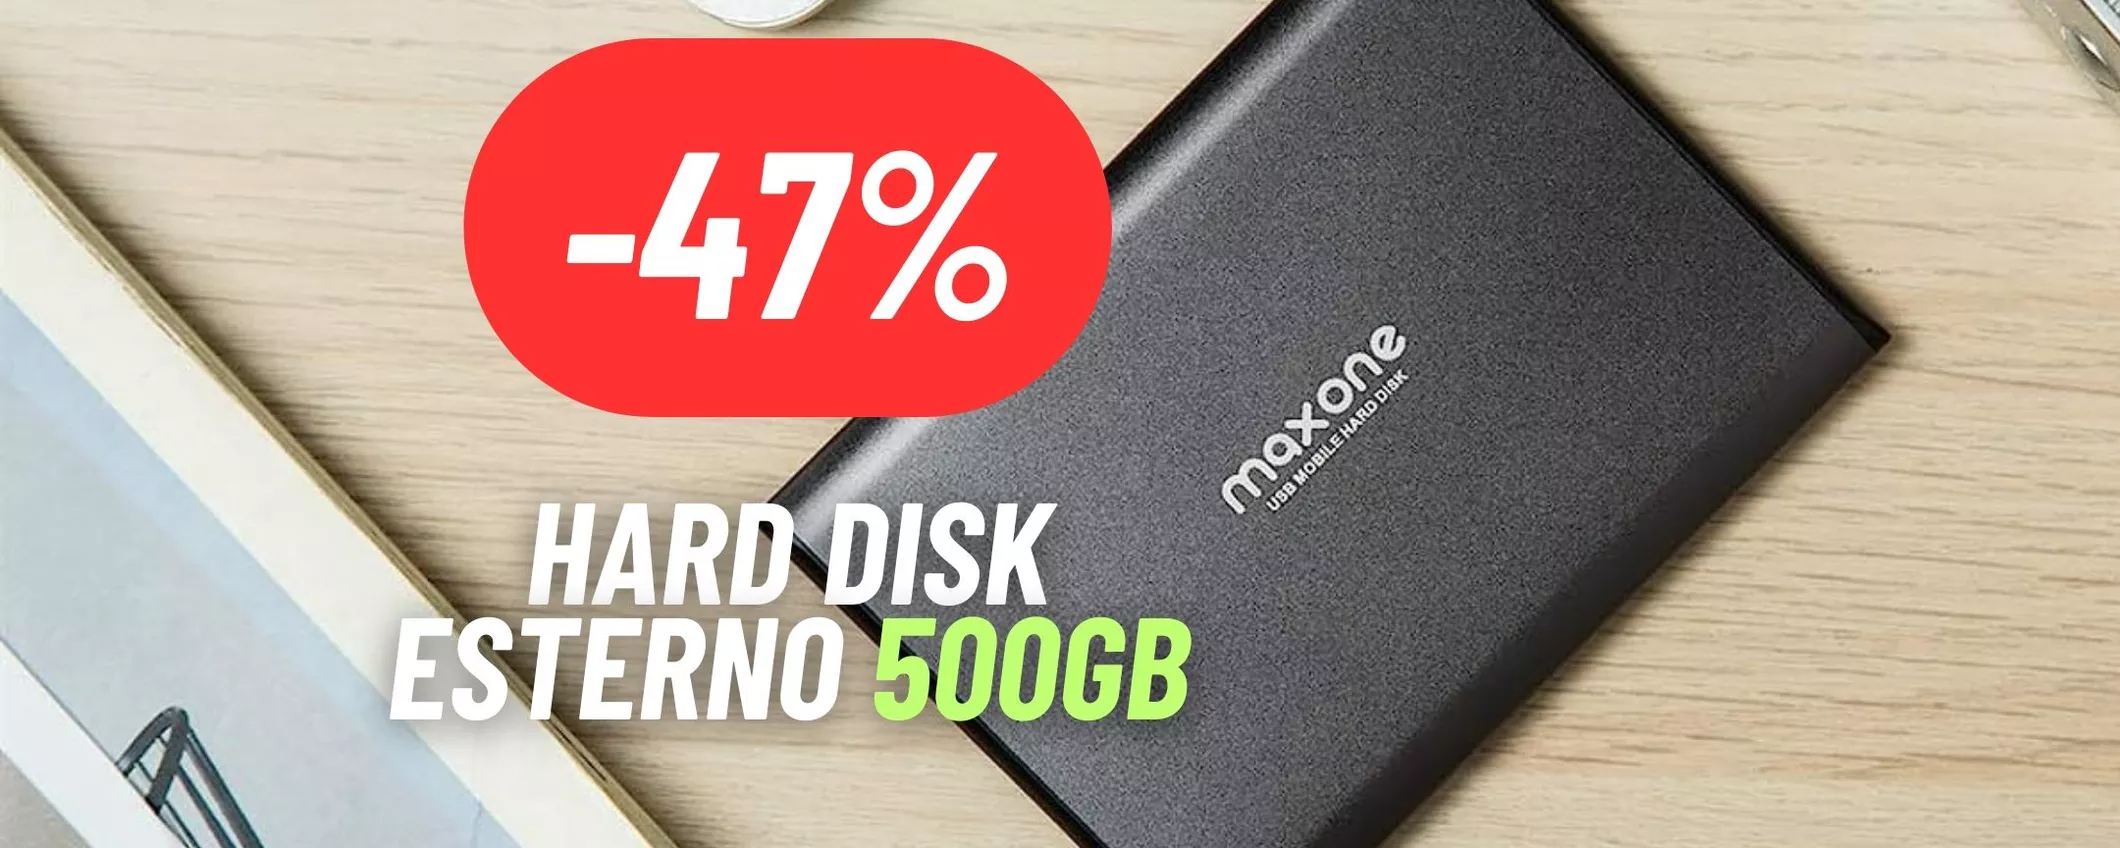 Hard disk esterno da 500GB MEGA SCONTATO: risparmia il 47%